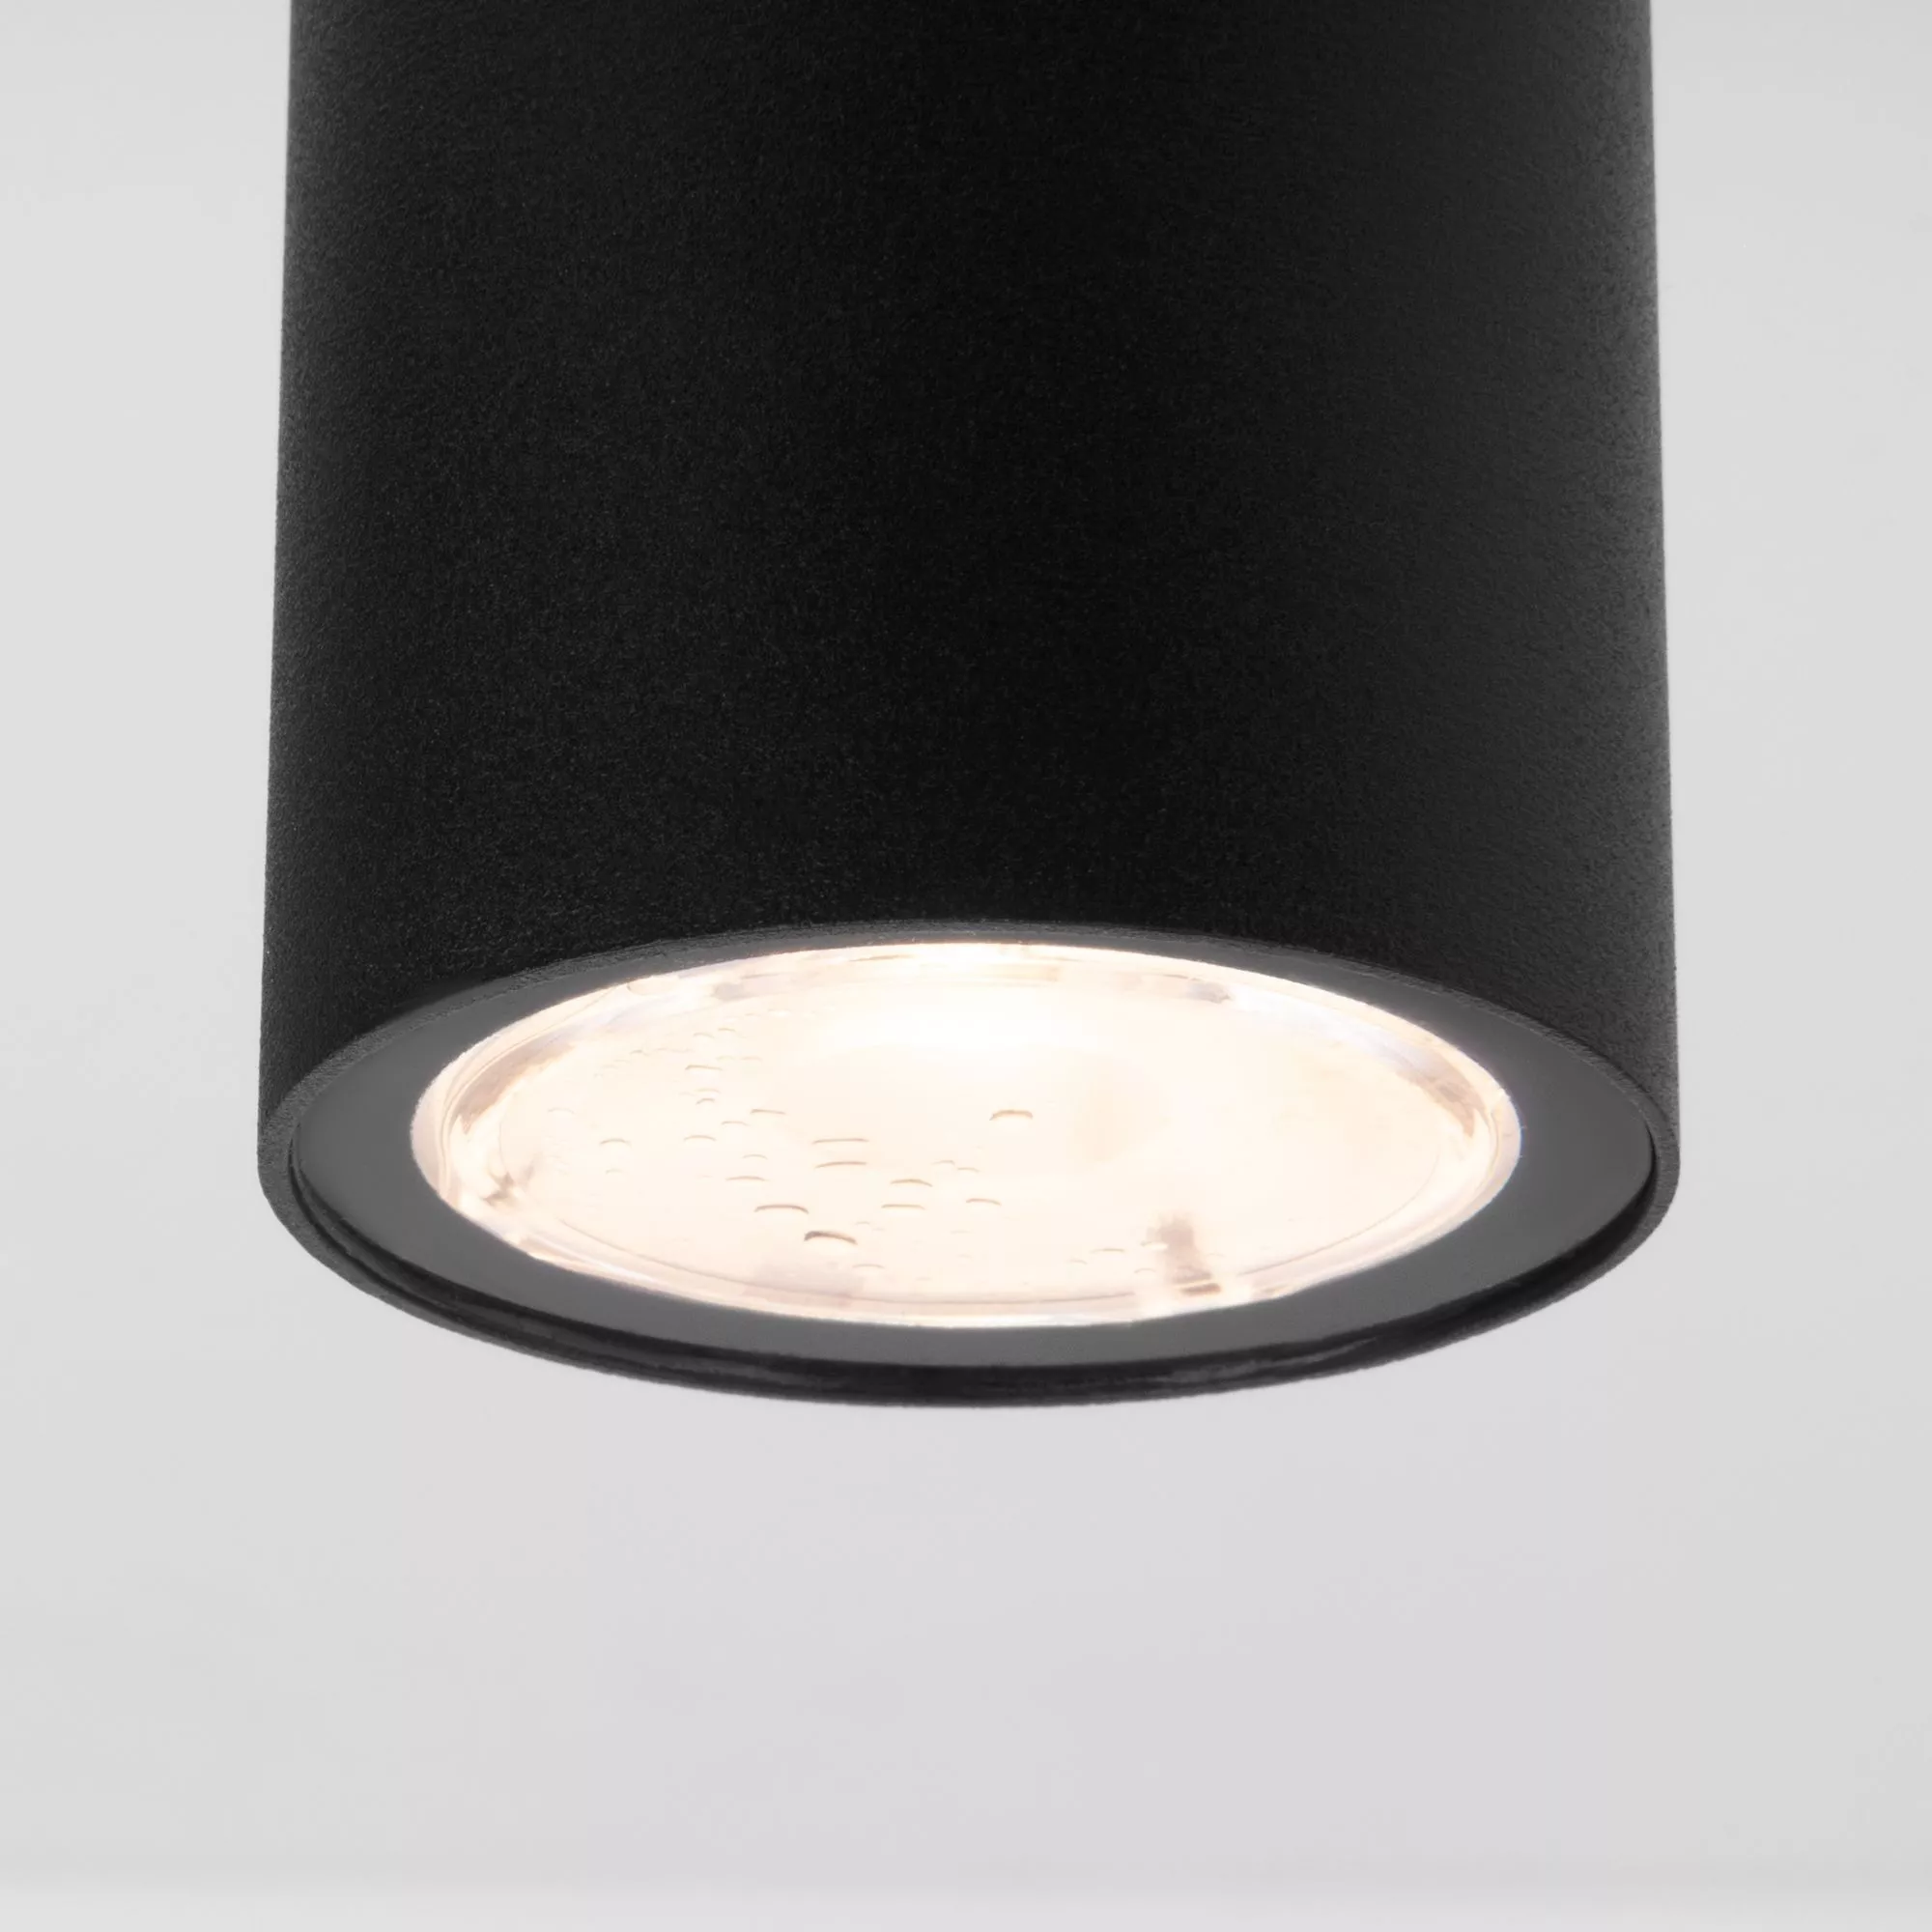 Точечный накладной светильник Elektrostandard Light LED 35129/H черный